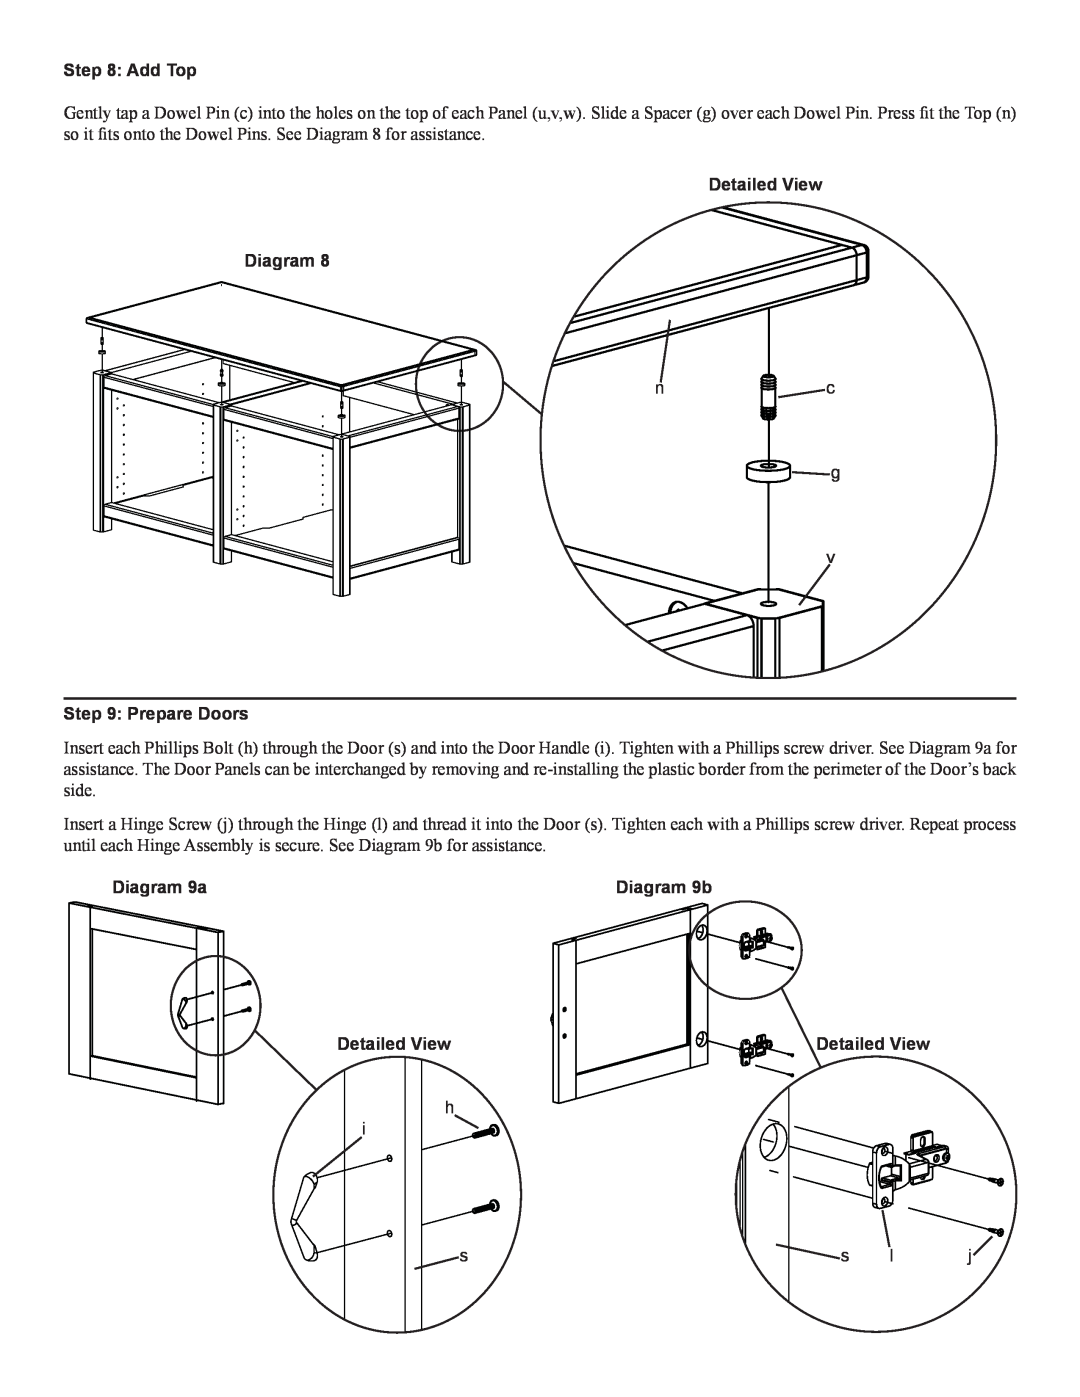 Sanus Systems WFV44 manual Add Top, Prepare Doors, Diagram 9a, Diagram 9b, Detailed View Diagram 